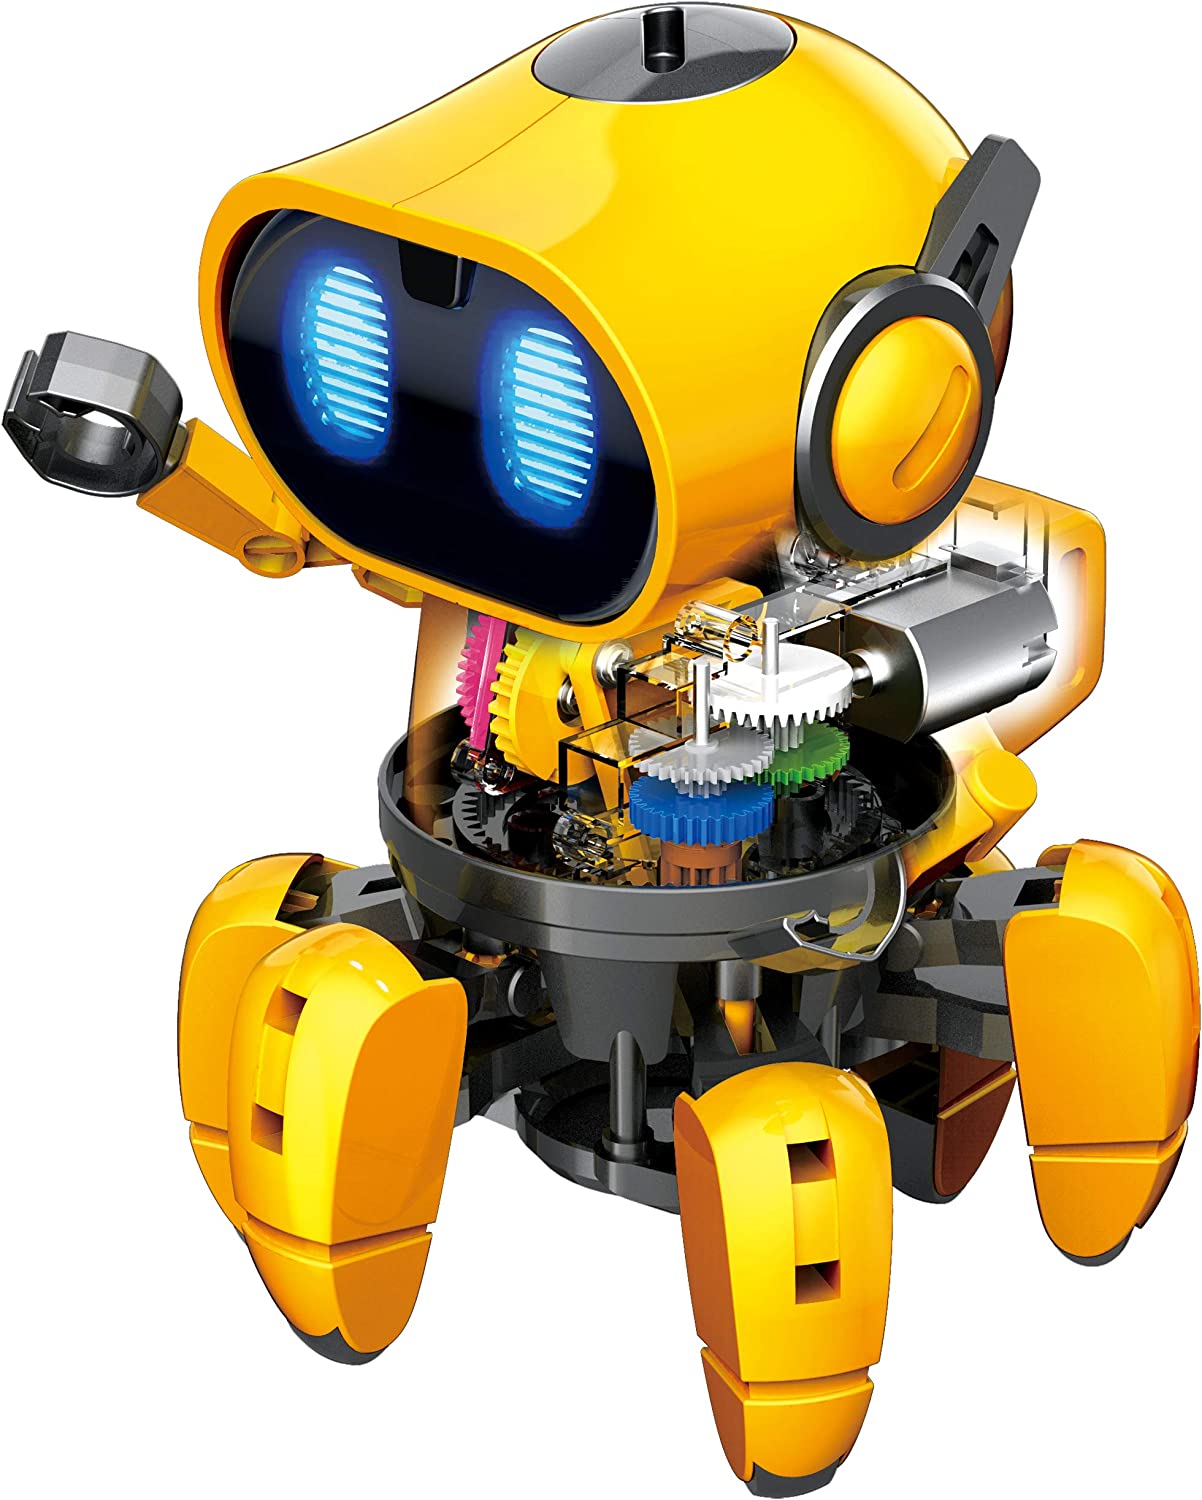 Elenco Teach Tech √É¬¢√¢‚Äö¬¨√Ö‚ÄúZivko The Robot√É¬¢√¢‚Äö¬¨√Ç¬ù, Interactive A/I Capable Robot with Infrared Sensor, STEM Learning Toys for Kids 10+